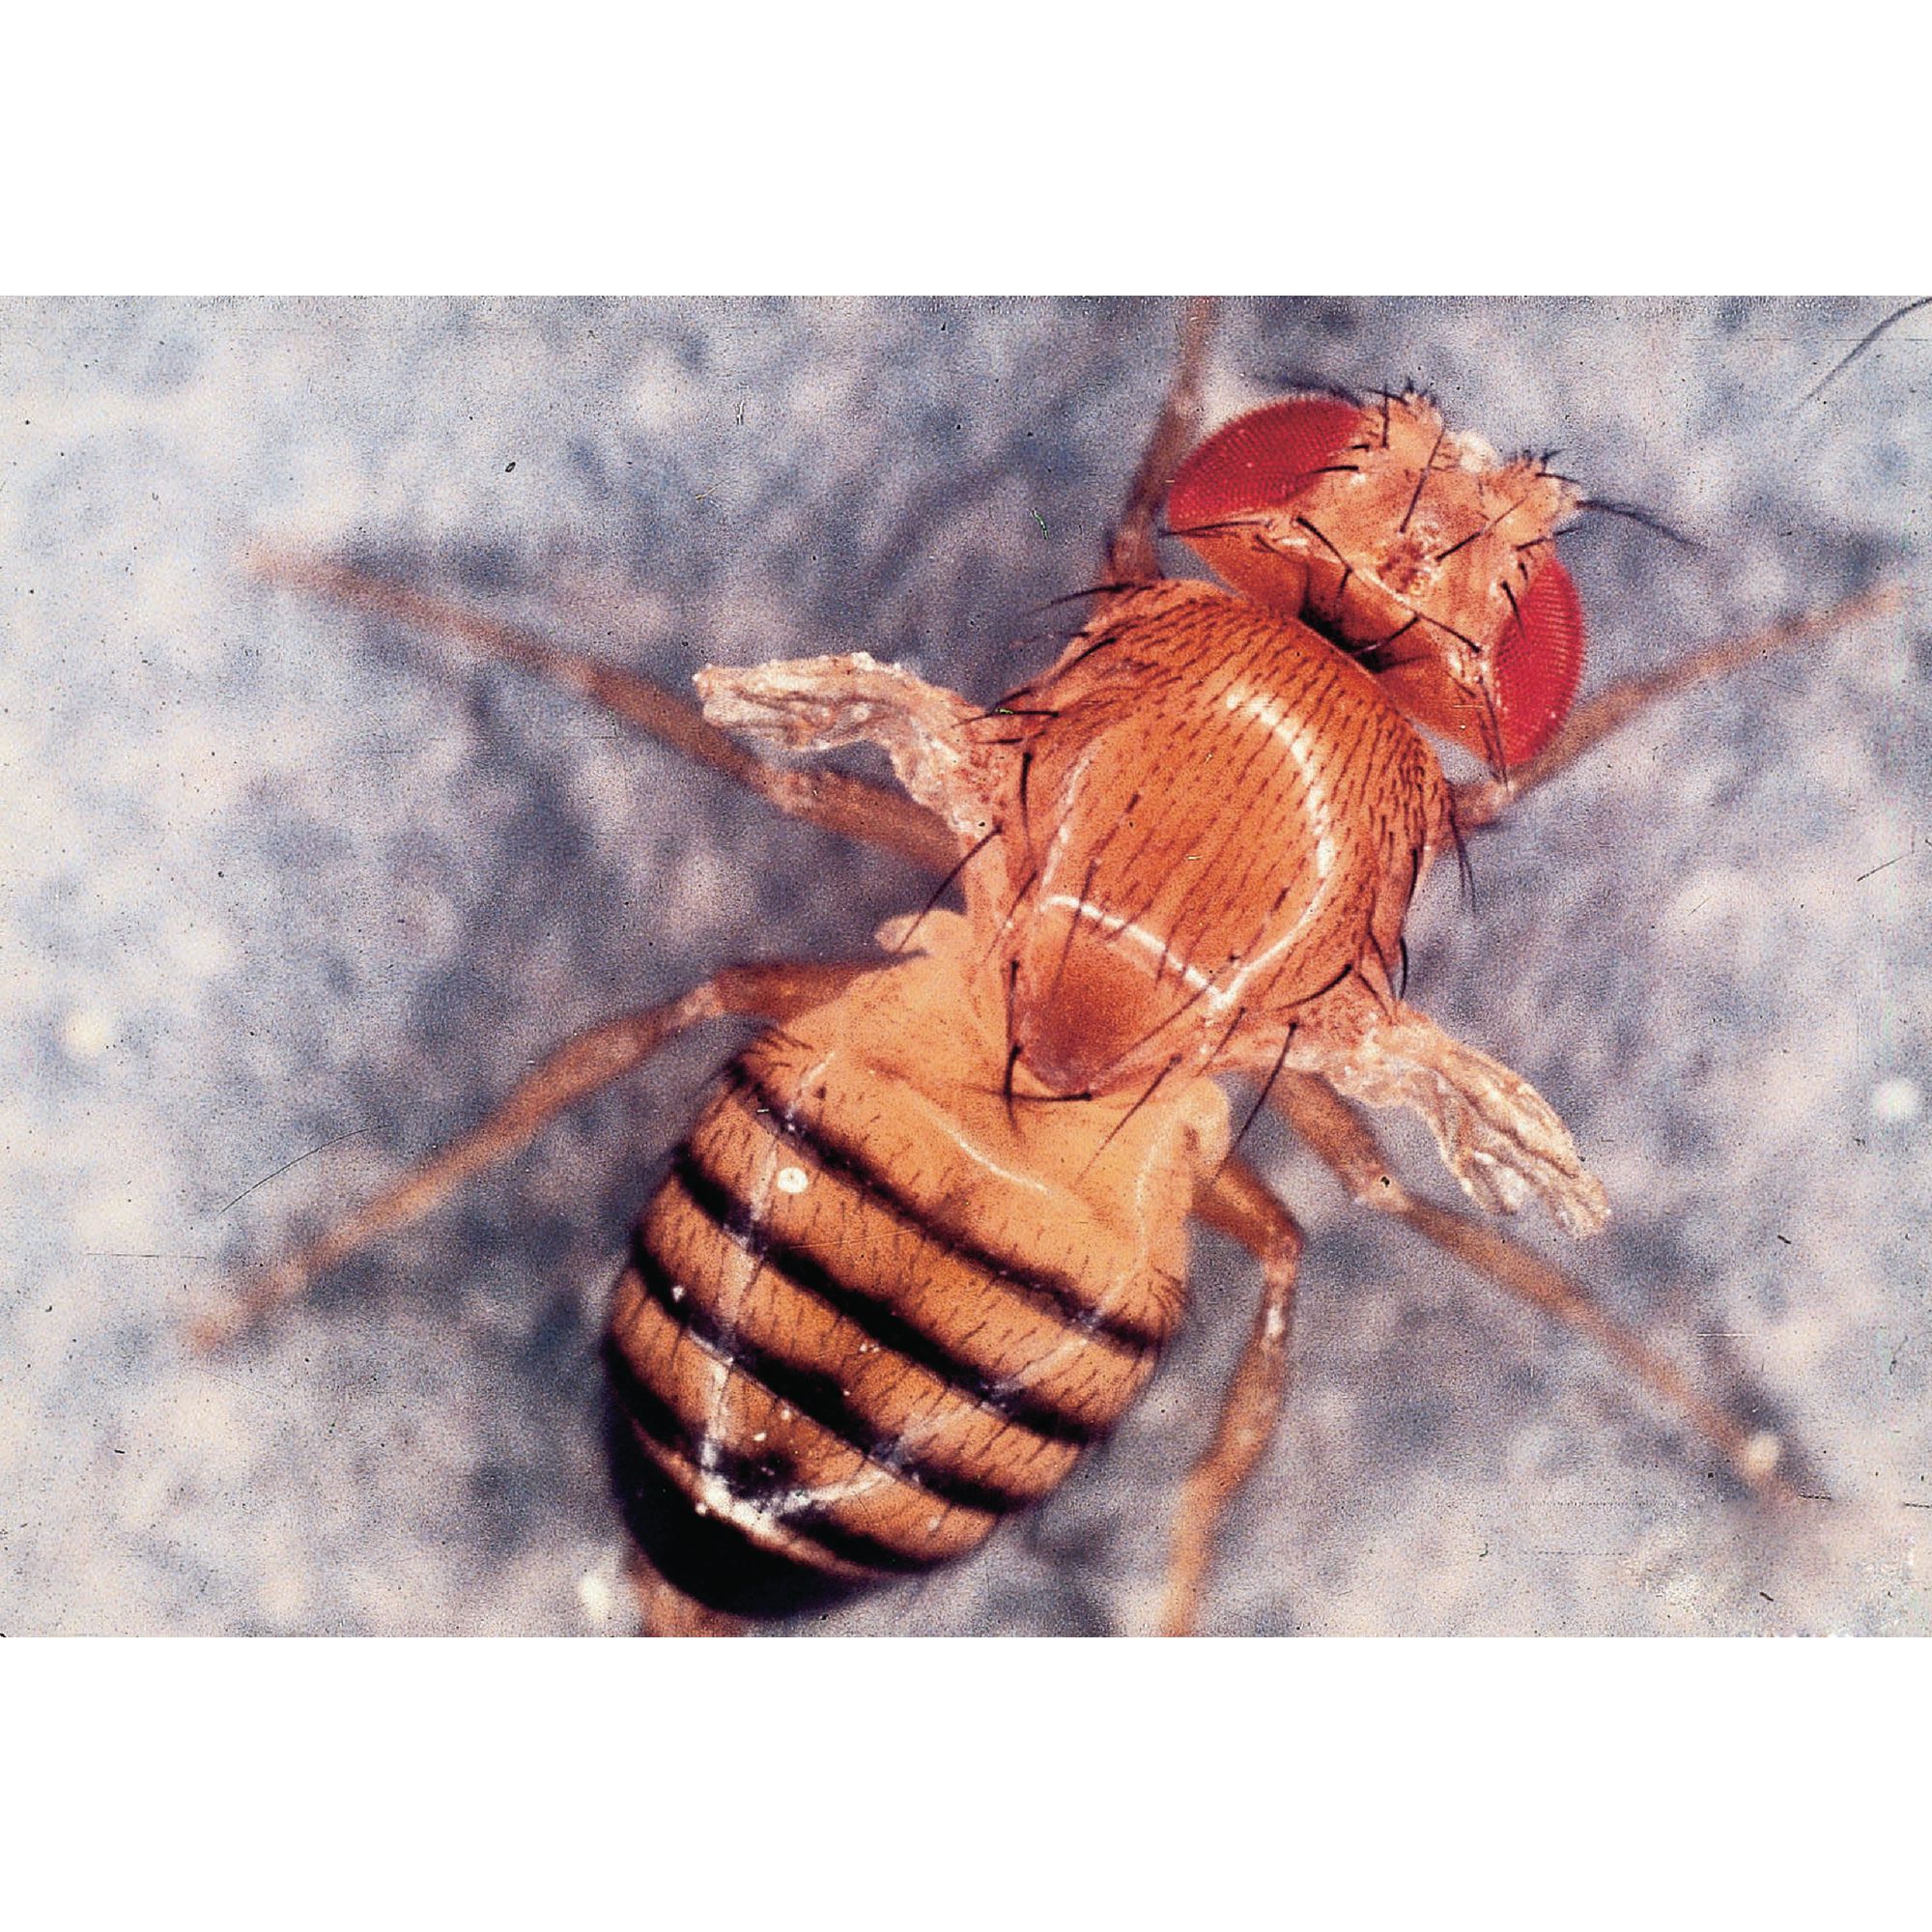 Drosophila Scarlet Eye Small Culture